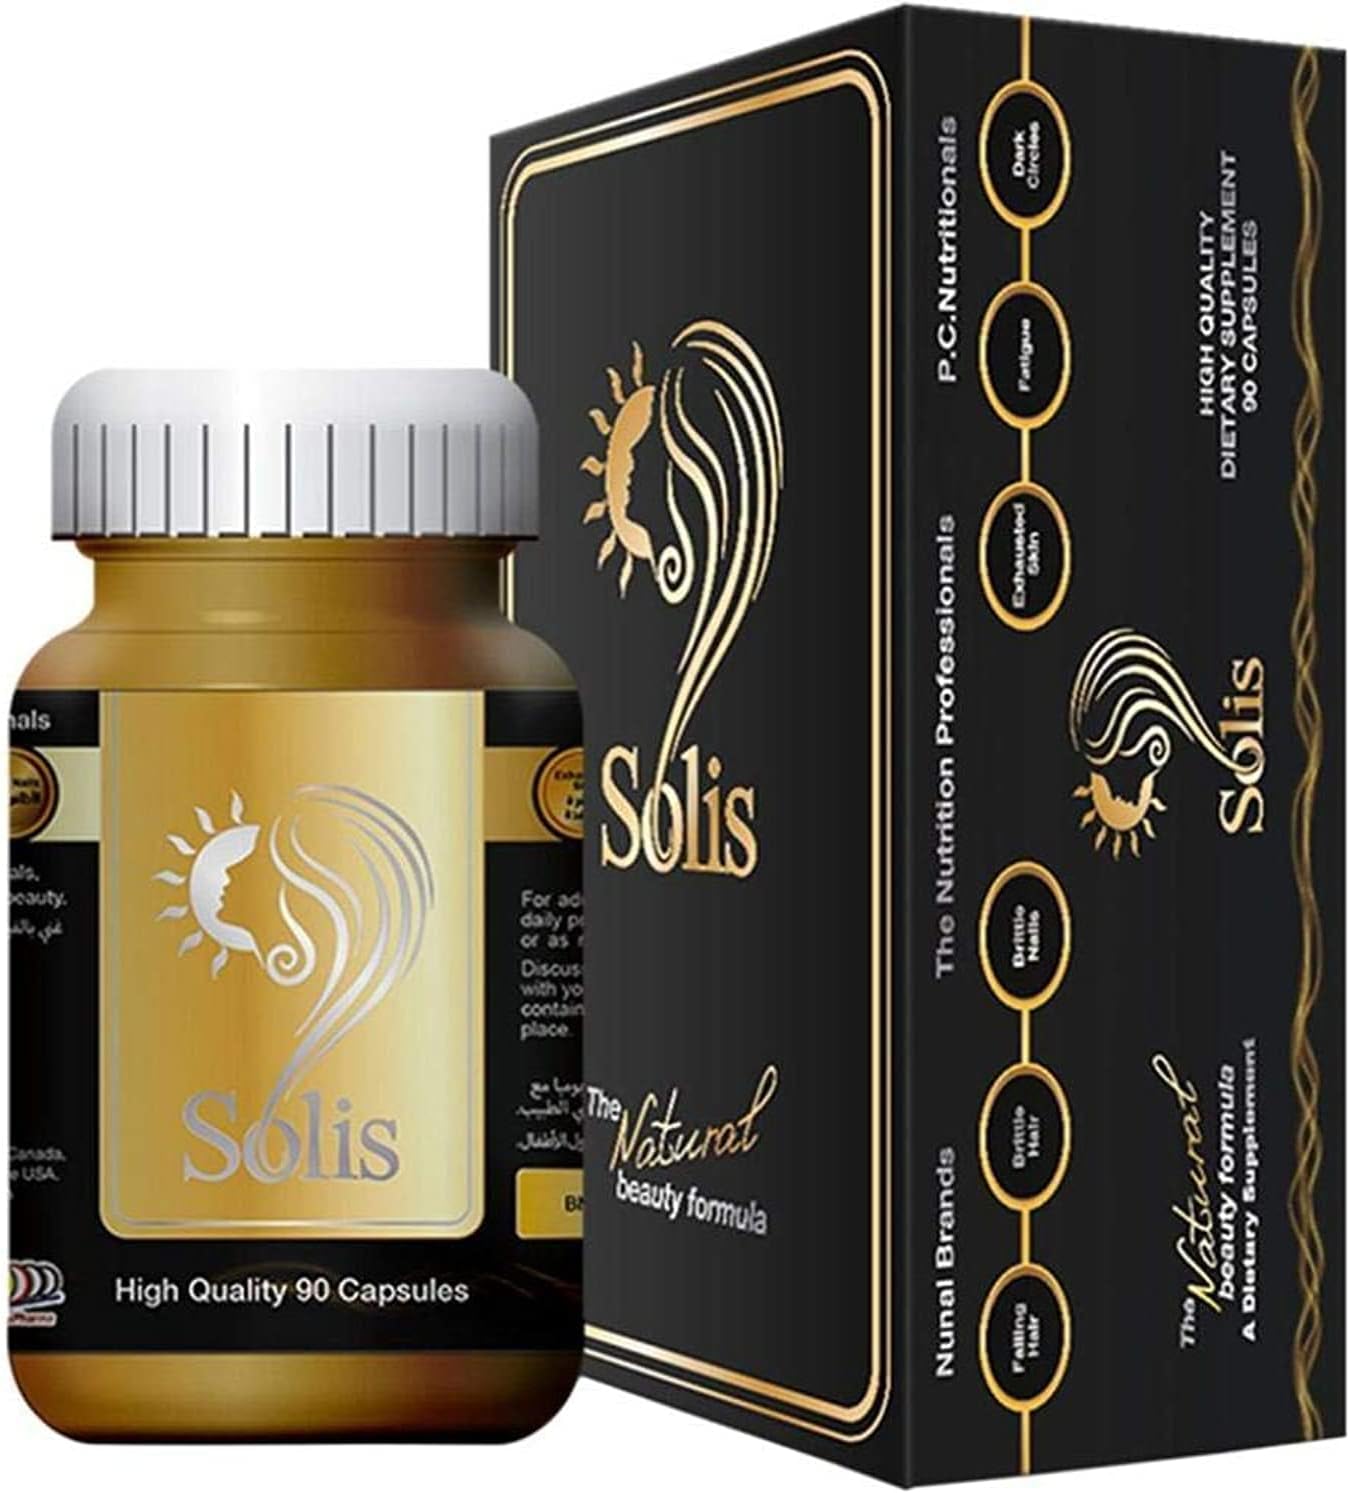 JULPHAR Solis The Natural Beauty Formula for Hair, Skin, Nails and Treatment Dark Circles (90 Capsules)